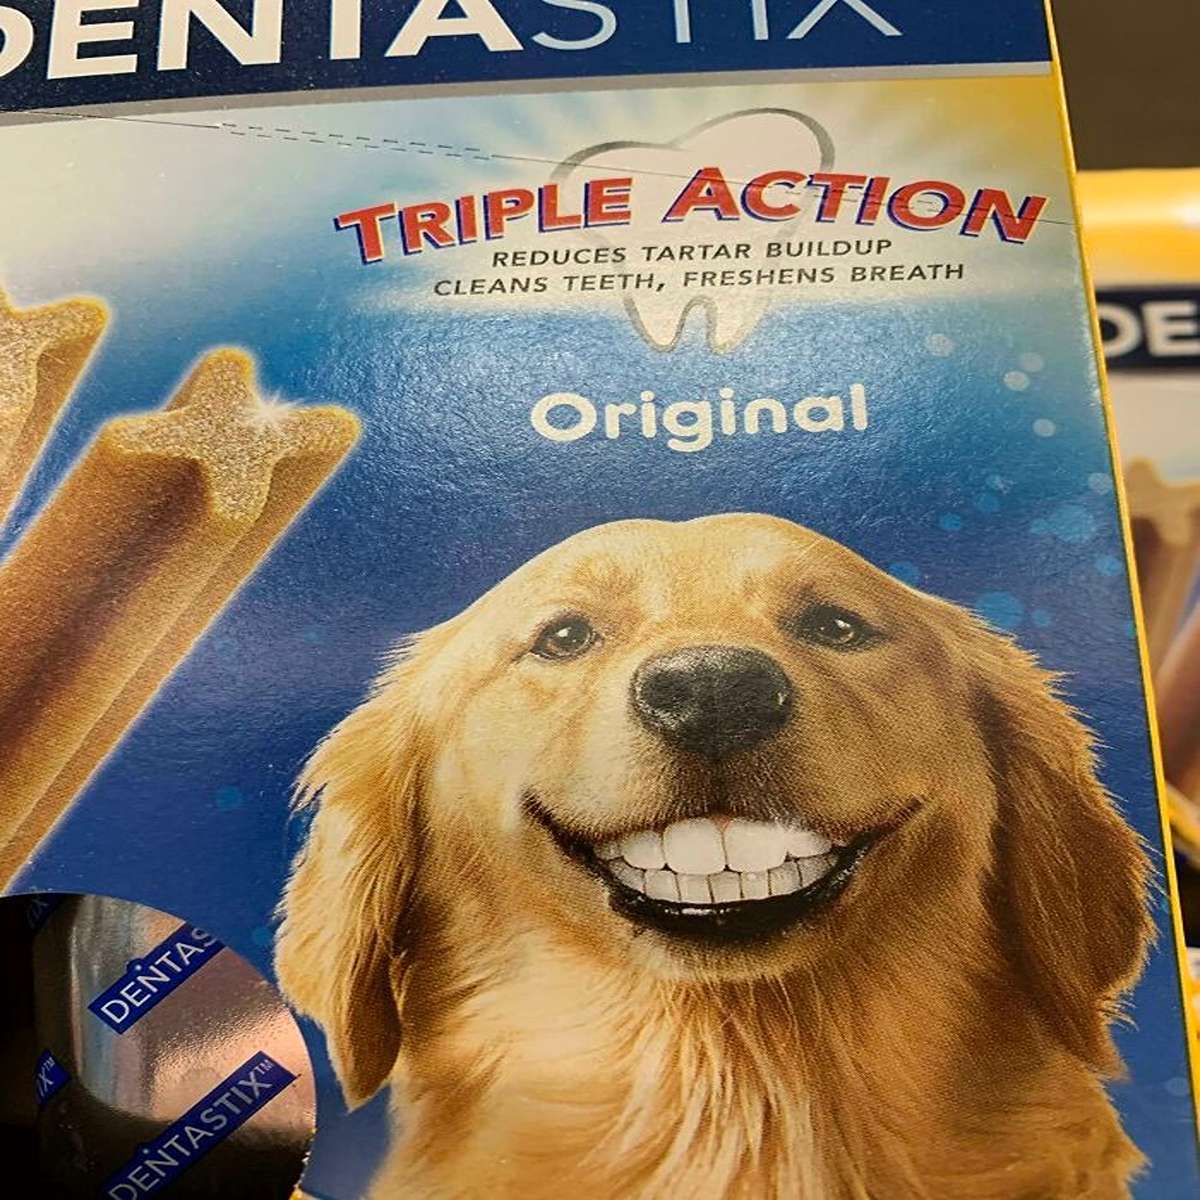 Dog With Human Teeth